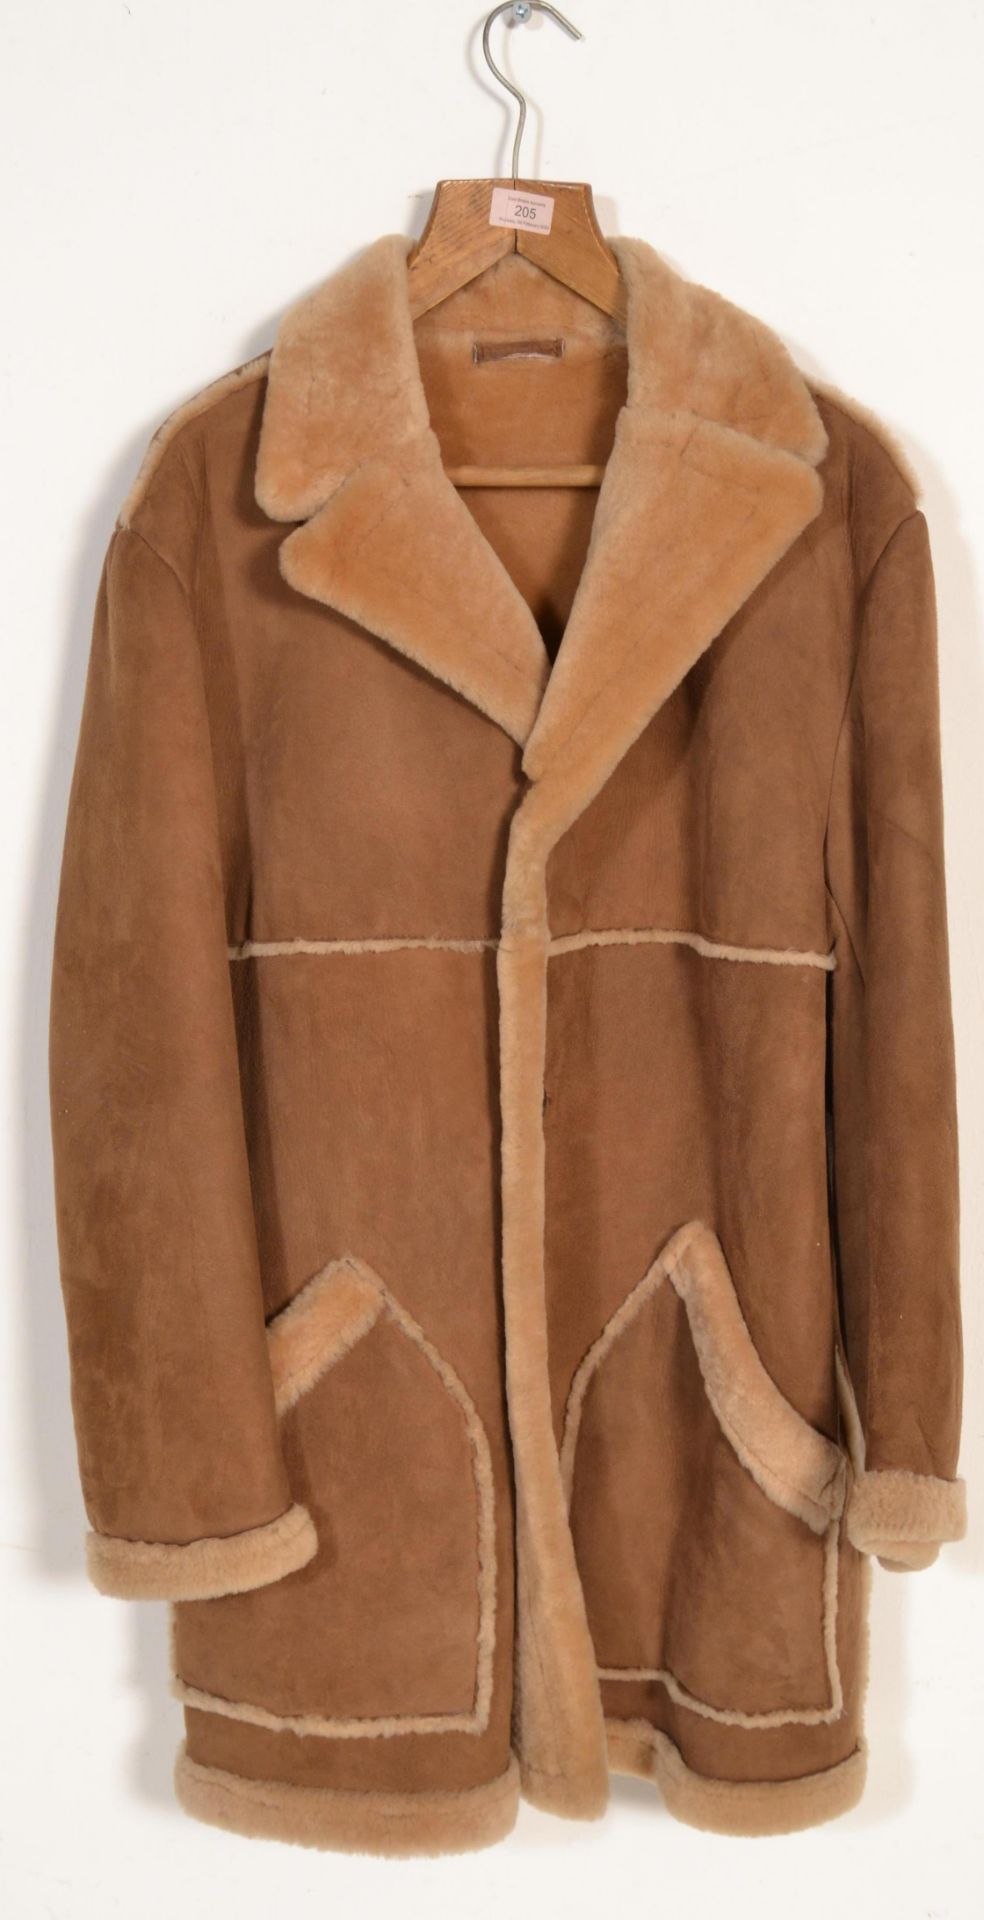 A vintage retro 1970's gentleman's sheepskin coat